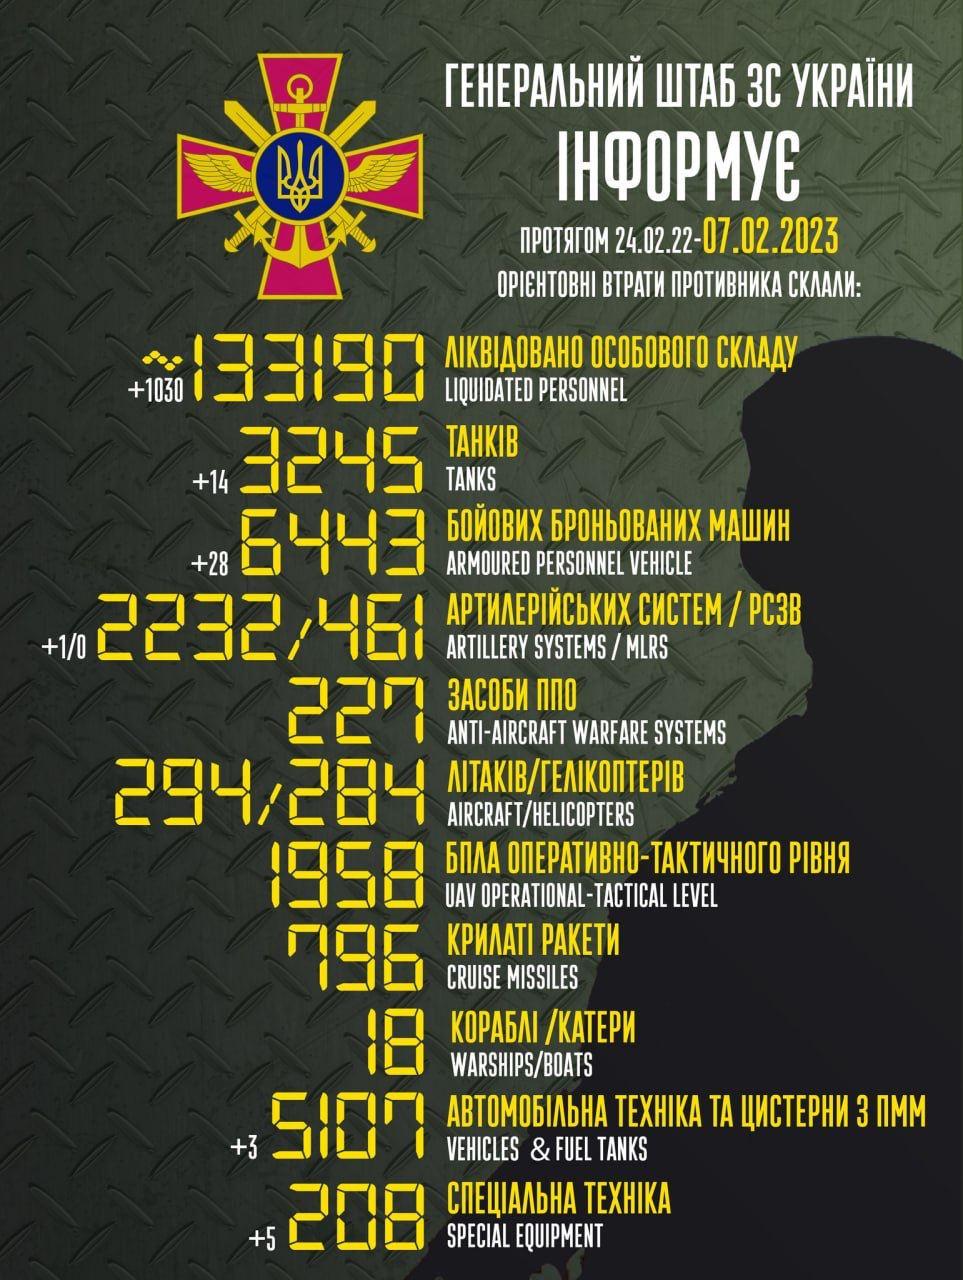 Russia’s losses in Ukraine as of seven/02/2023